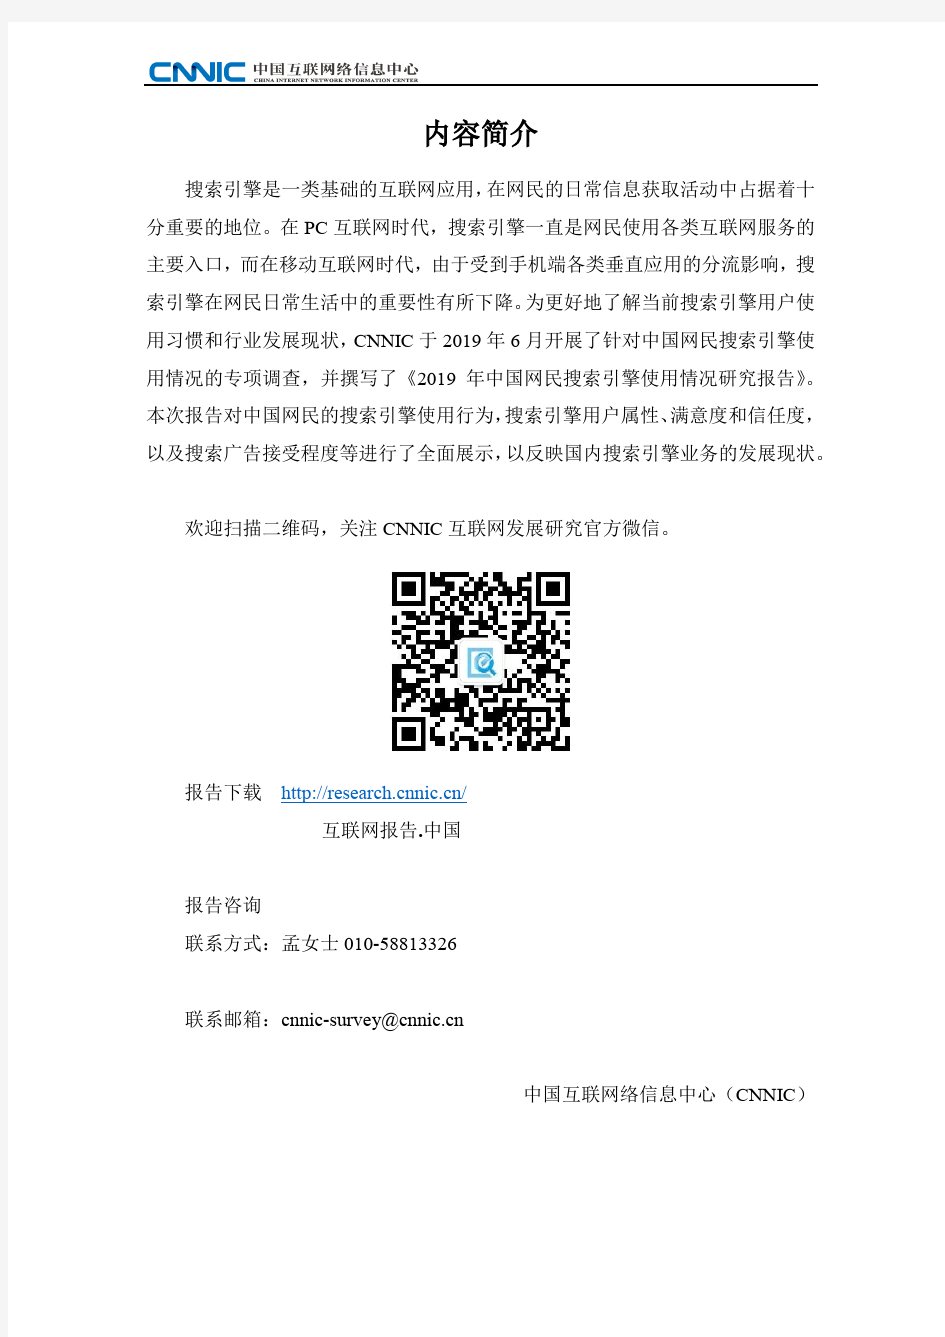 2019年中国网民搜索引擎使用情况研究报告